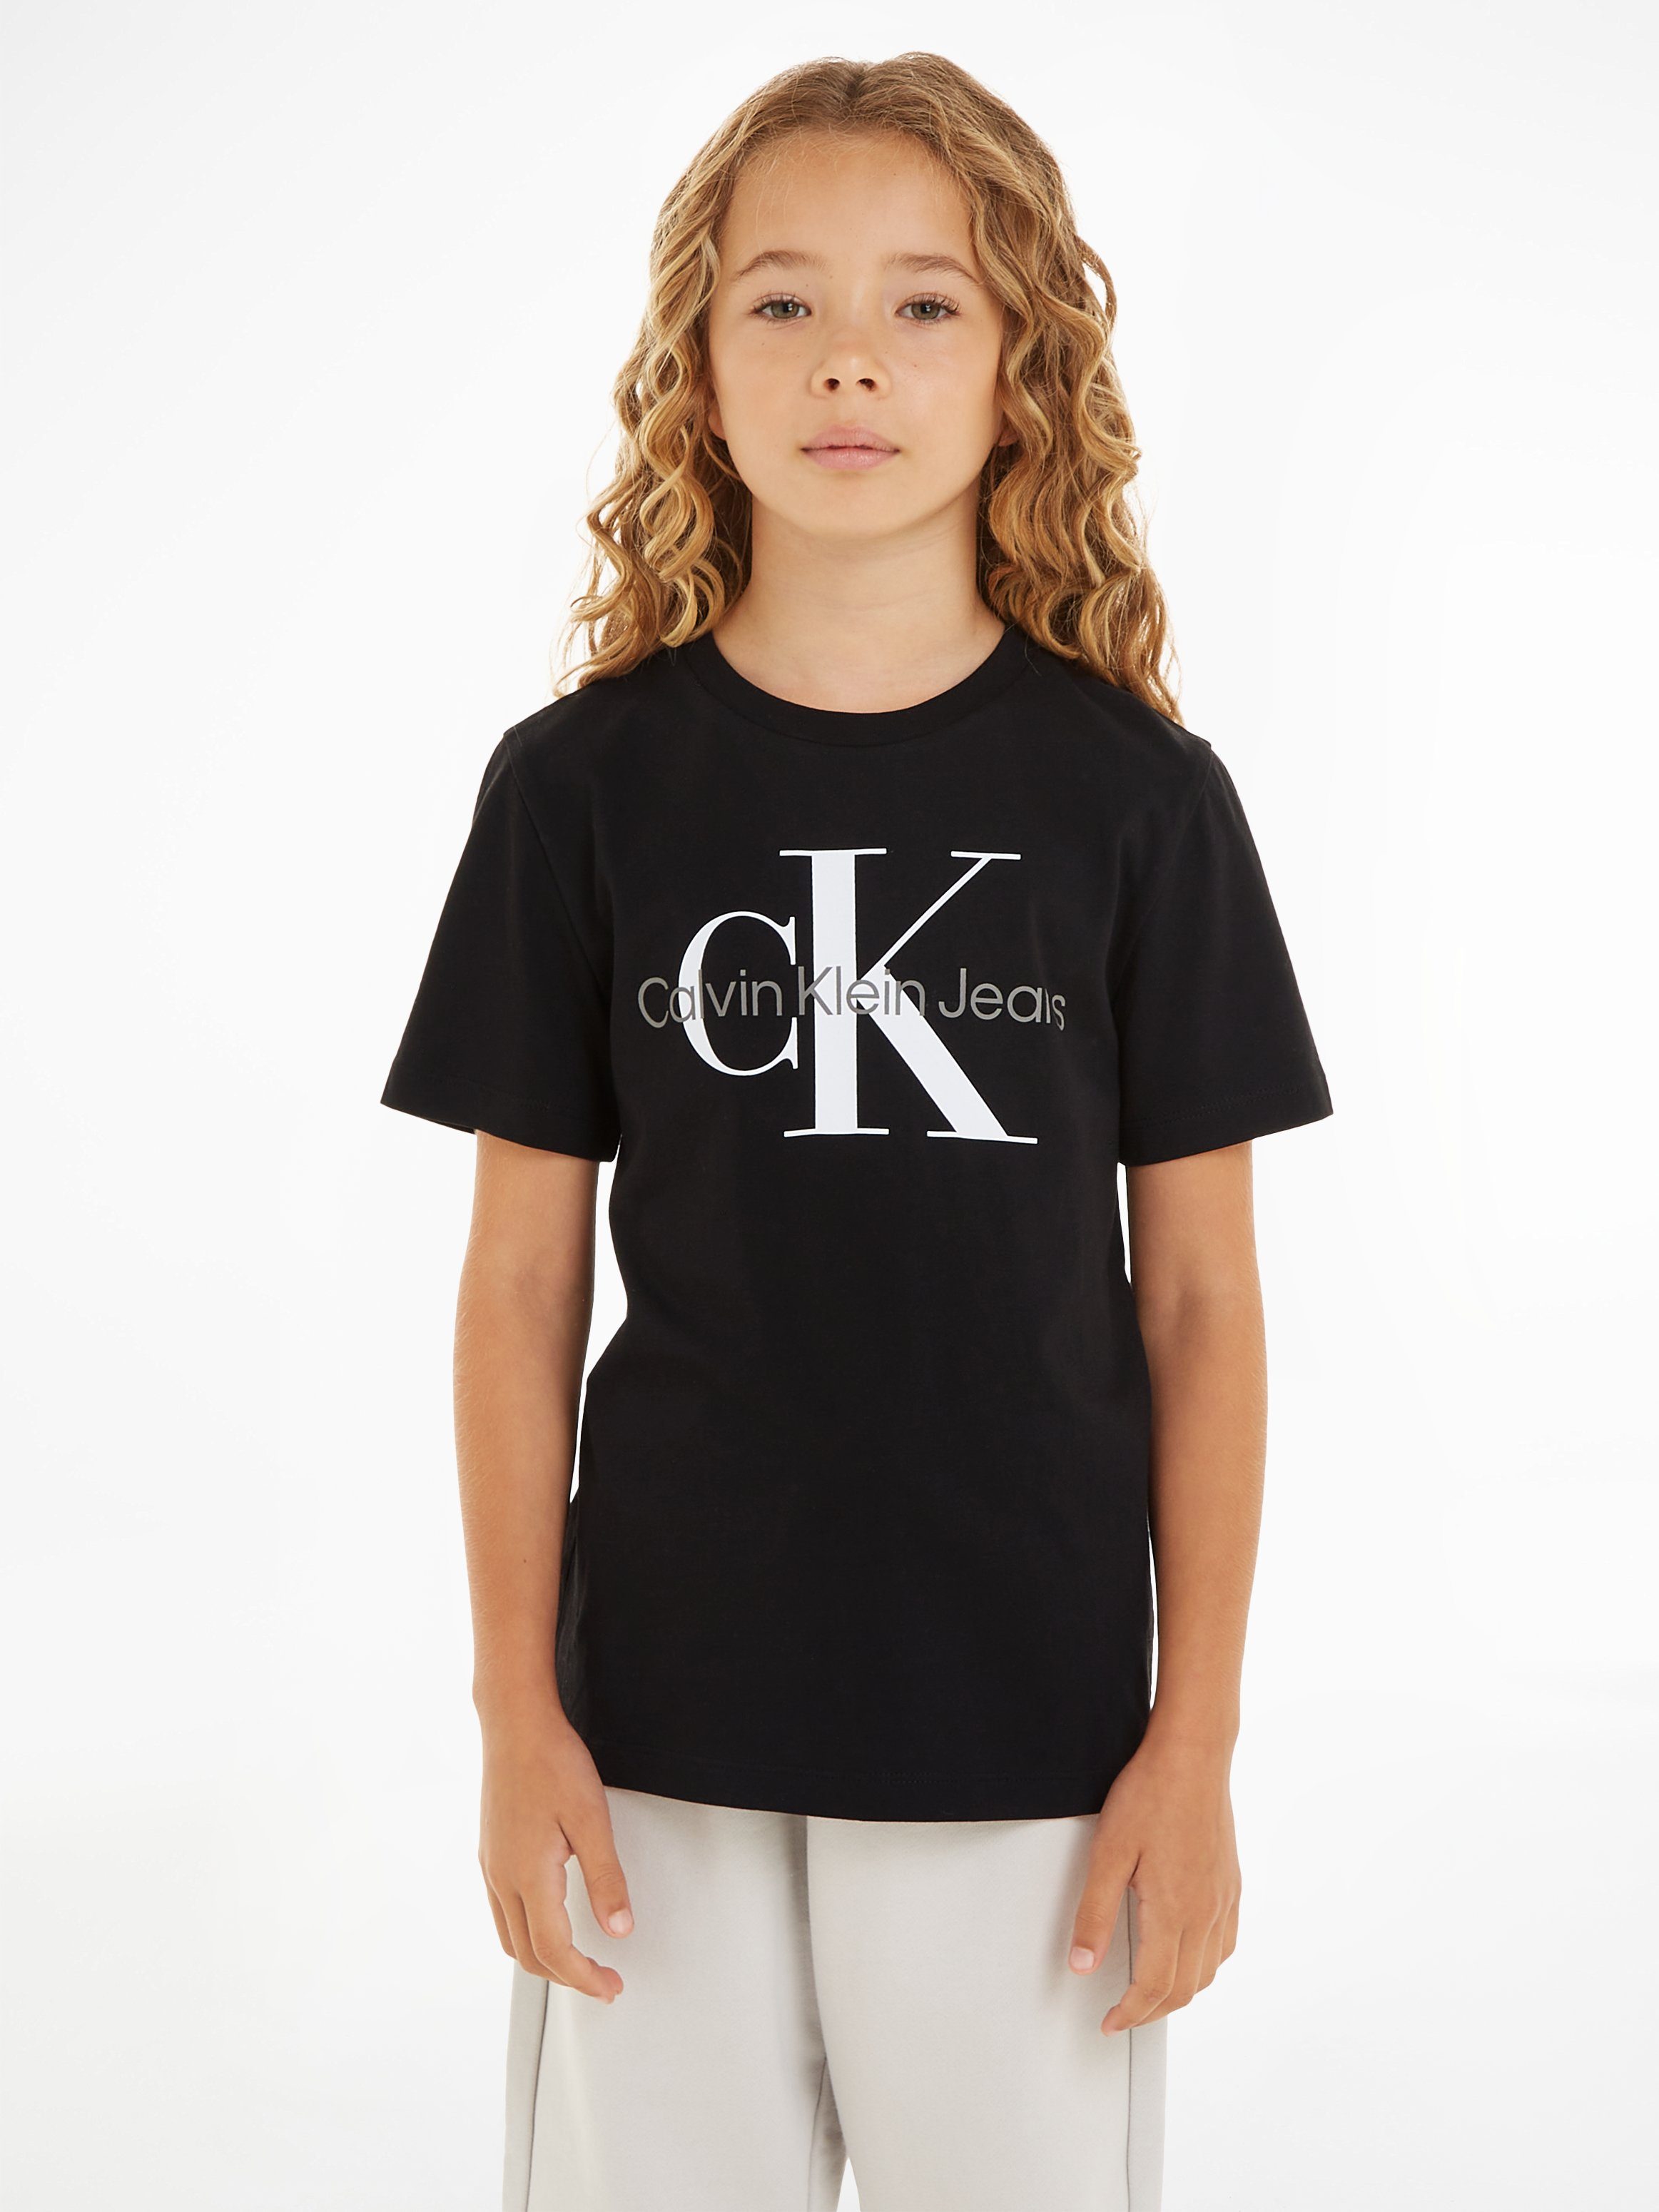 Calvin Klein Jeans CK T-SHIRT Black Ck SS T-Shirt MONOGRAM